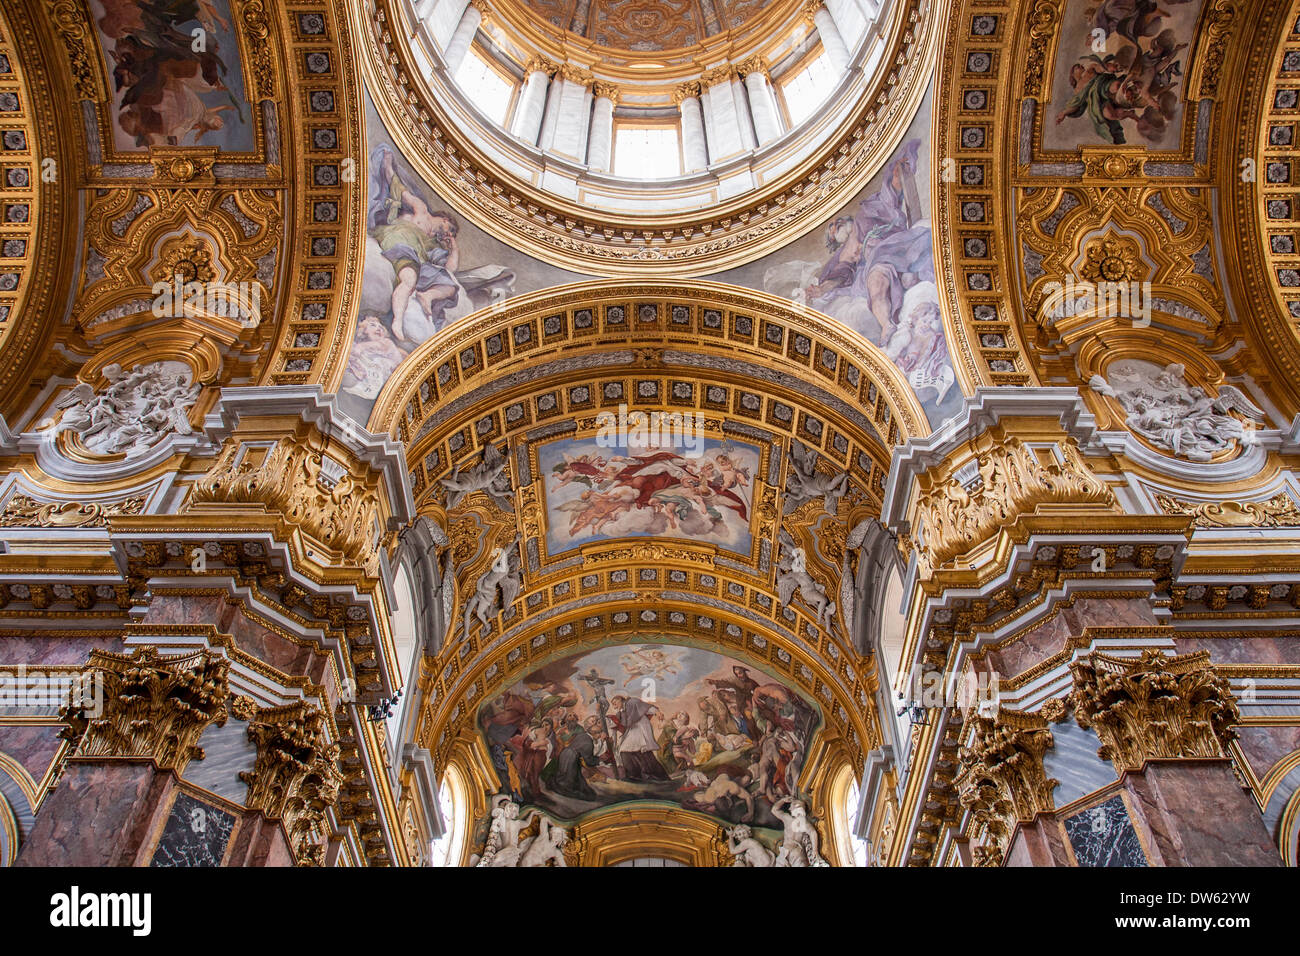 Interior of Sant'Ambrogio e Carlo al Corso - a basilica church built in the 17th century along Via del Corso, Rome, Italy Stock Photo